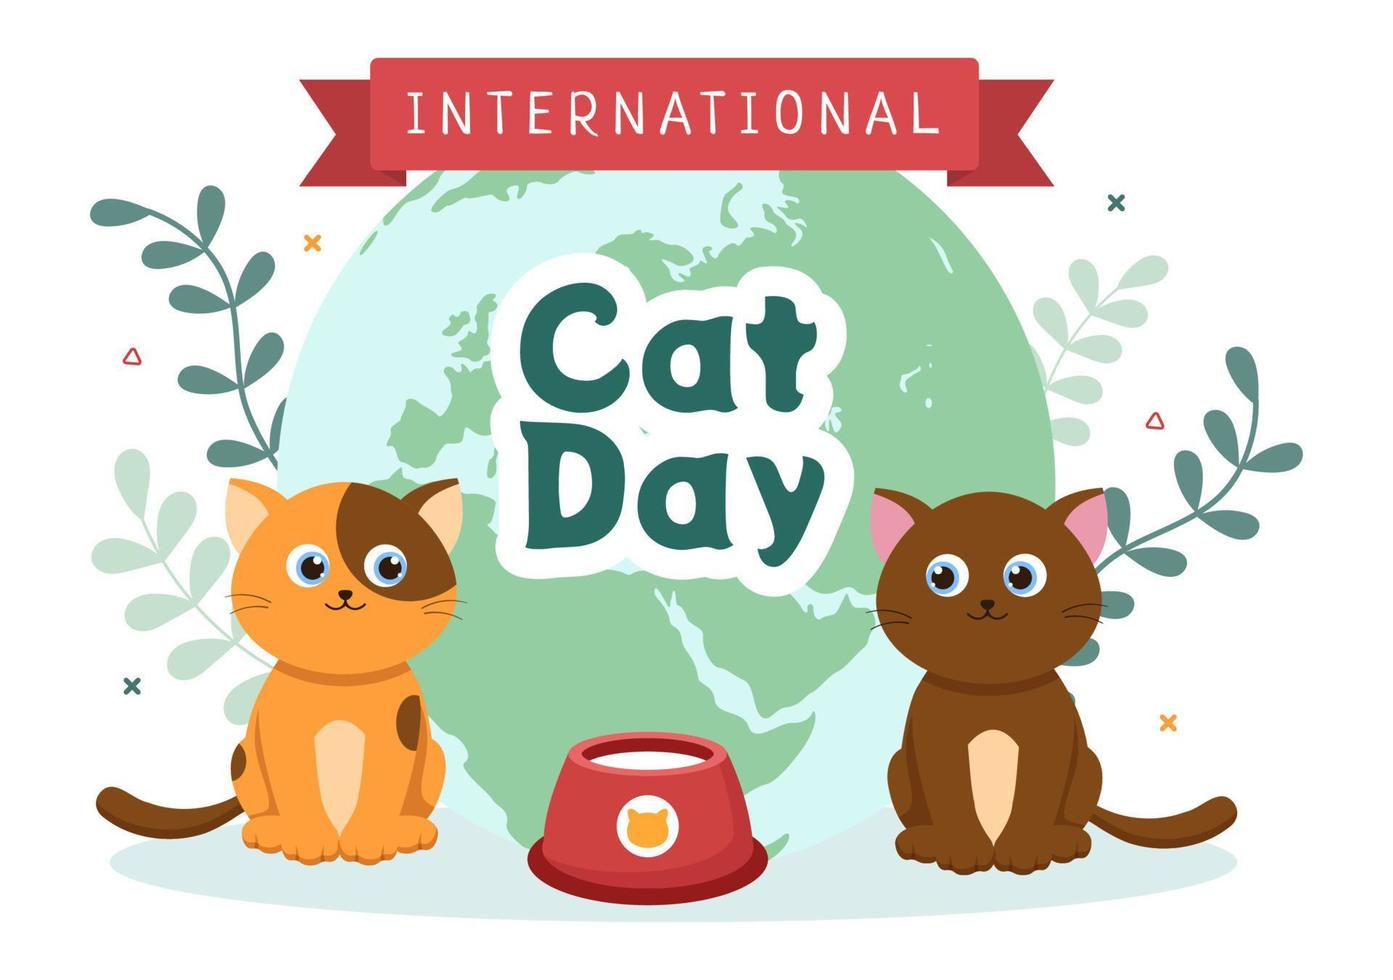 el día internacional del gato celebra la amistad entre humanos y gatos en agosto en una linda ilustración de fondo de caricatura plana vector